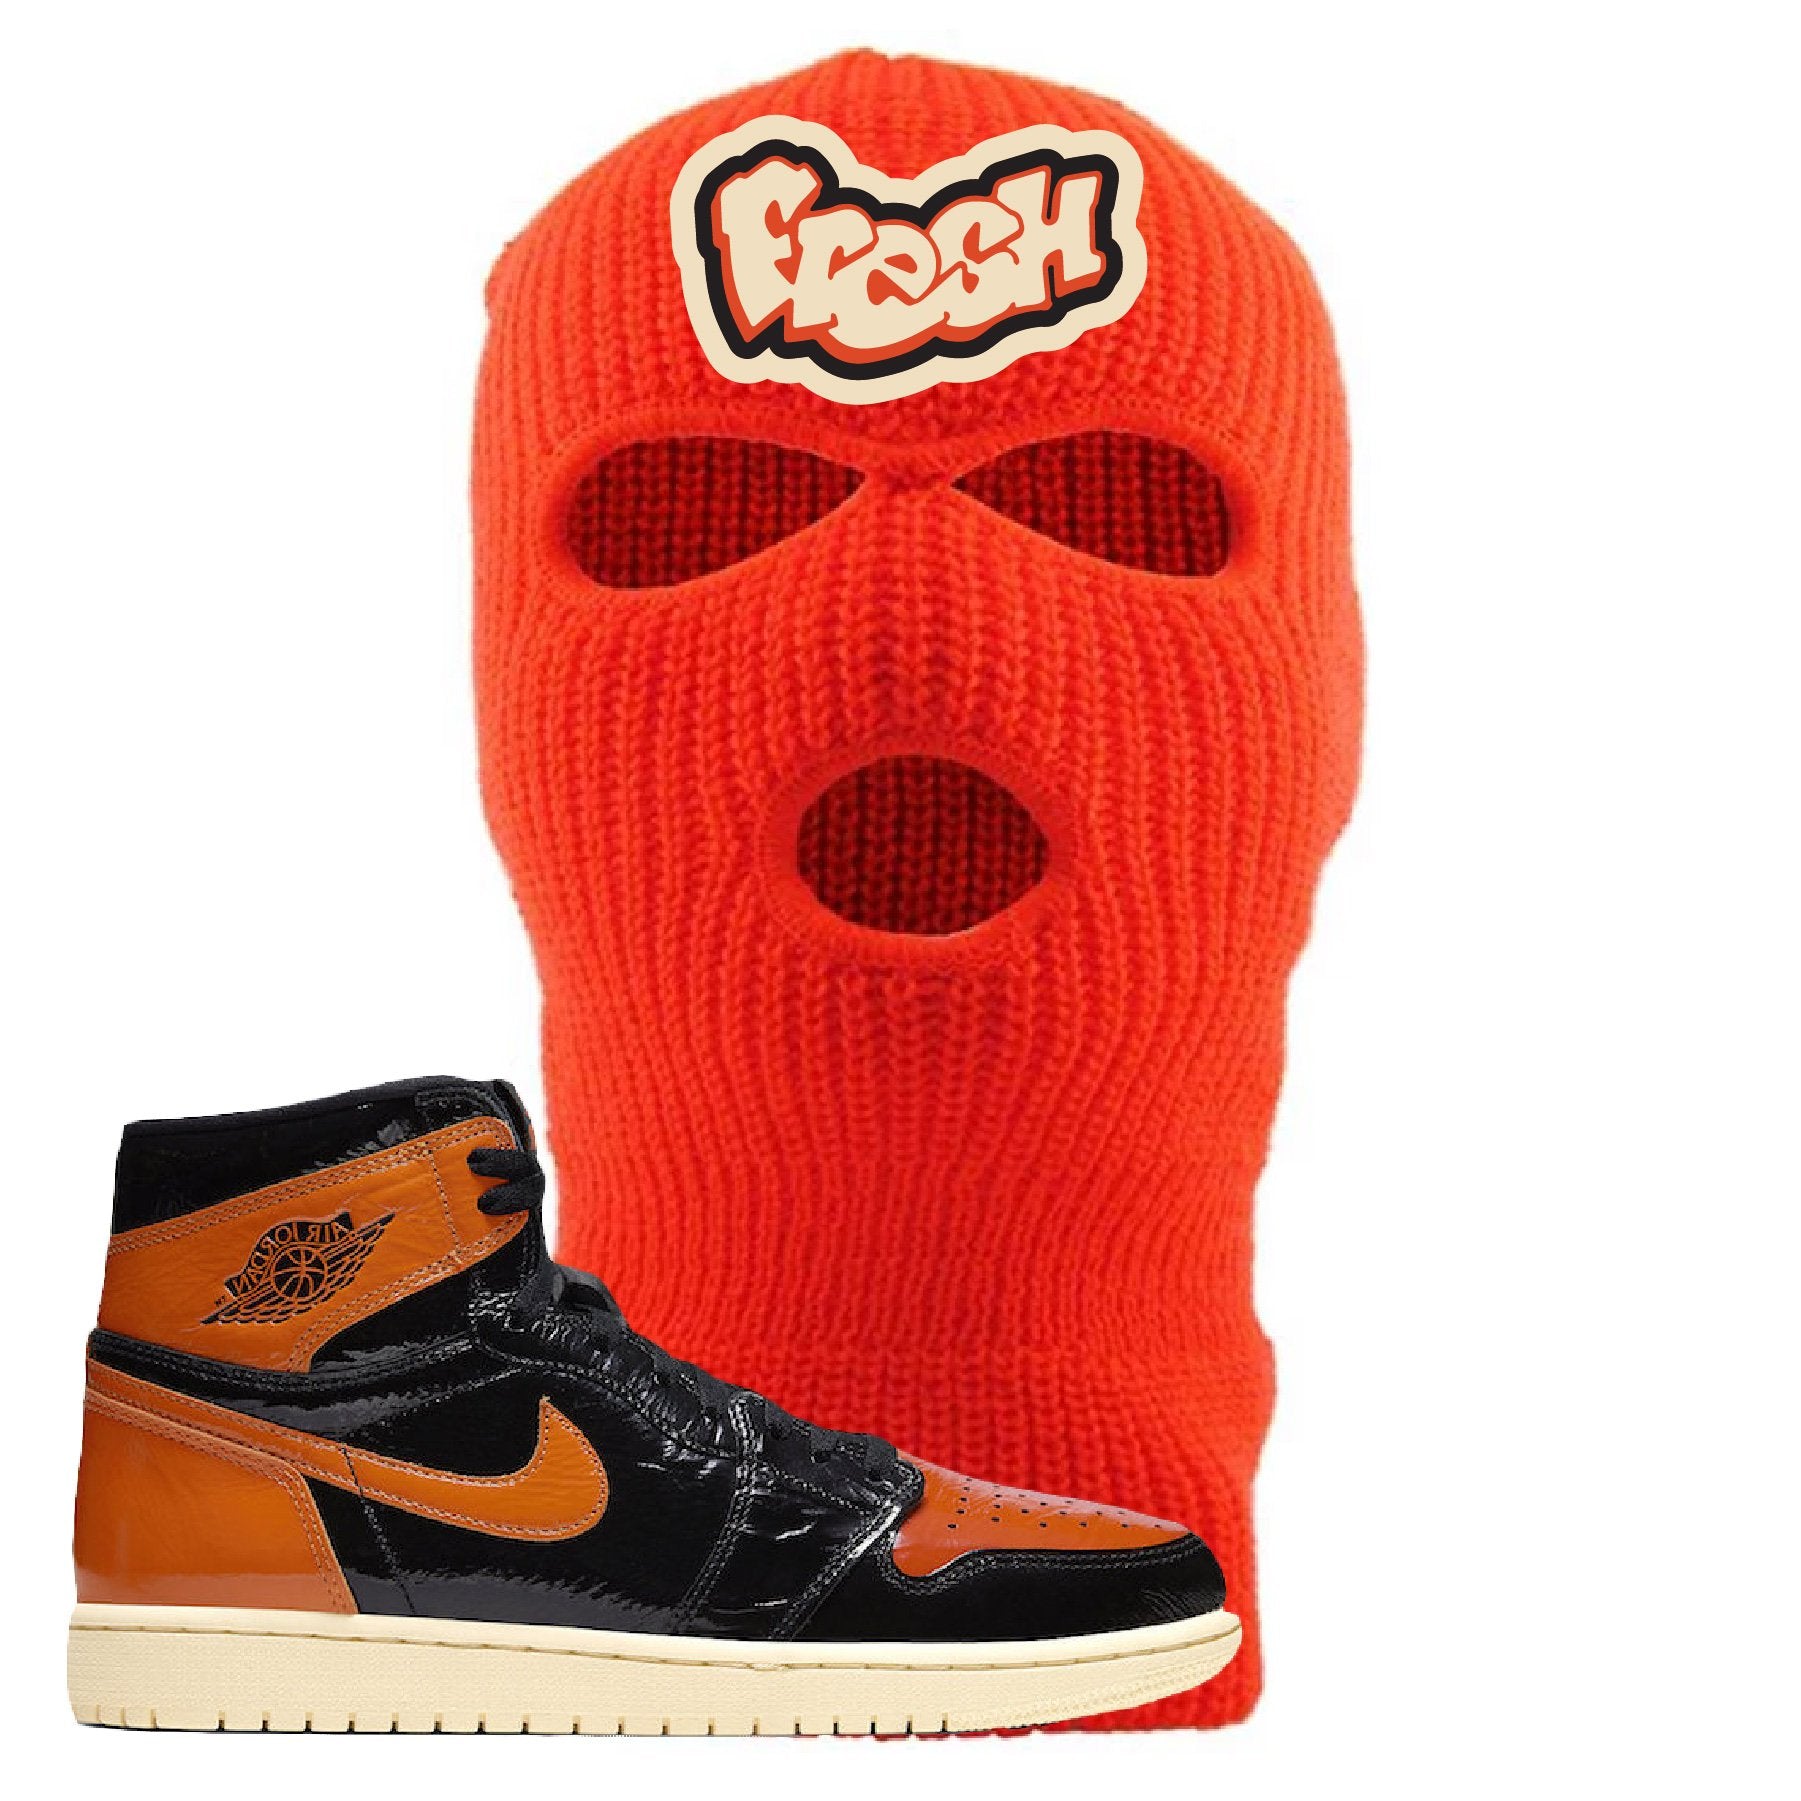 Jordan 1 Shattered Backboard Fresh Safety Orange Sneaker Hook Up Ski Mask